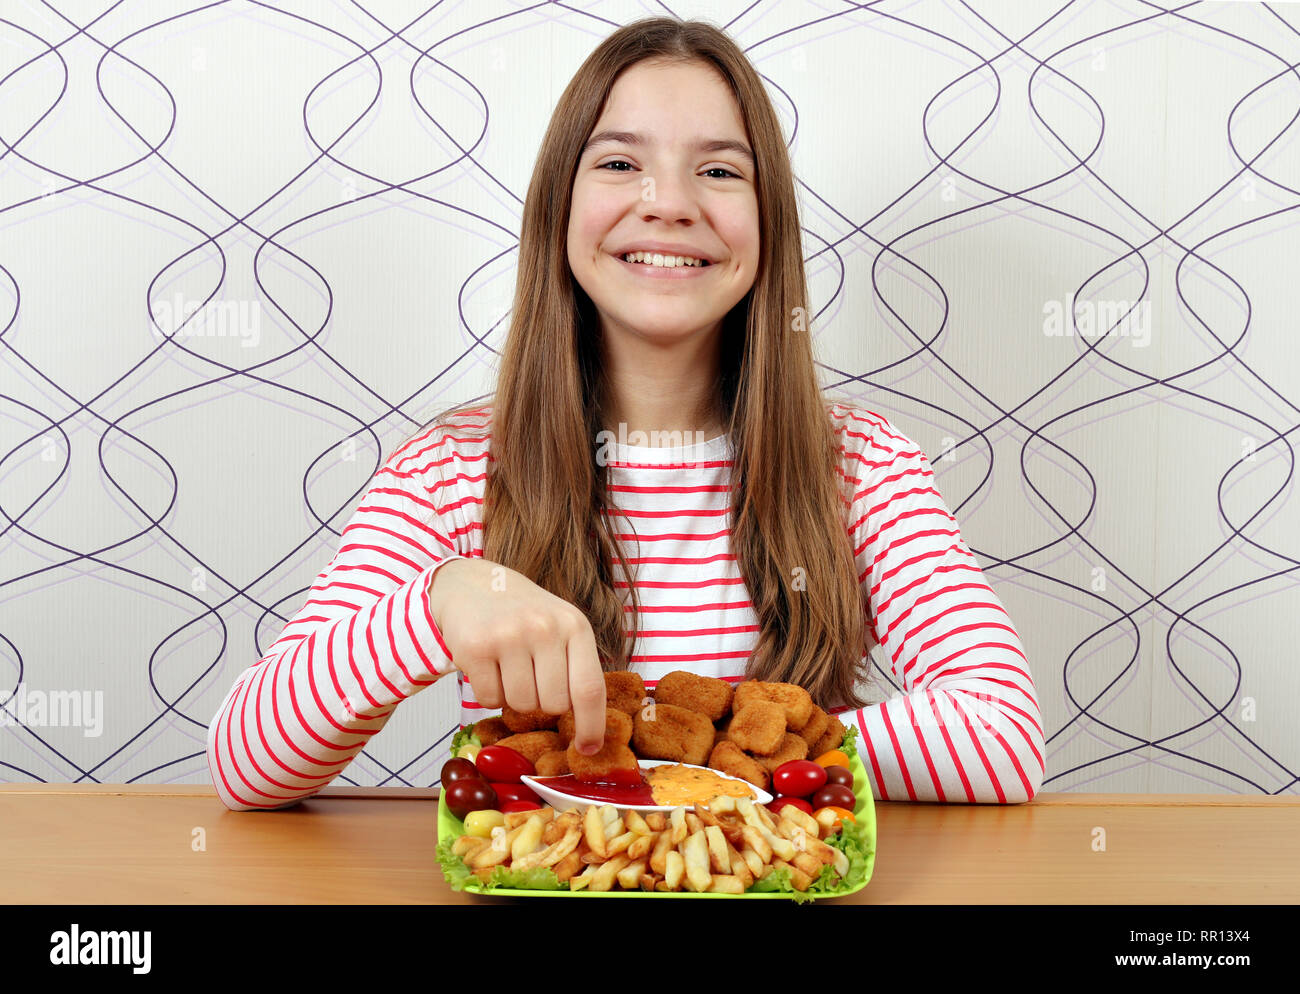 Feliz adolescente come nuggets de pollo con salsa de tomate Fotografía de  stock - Alamy